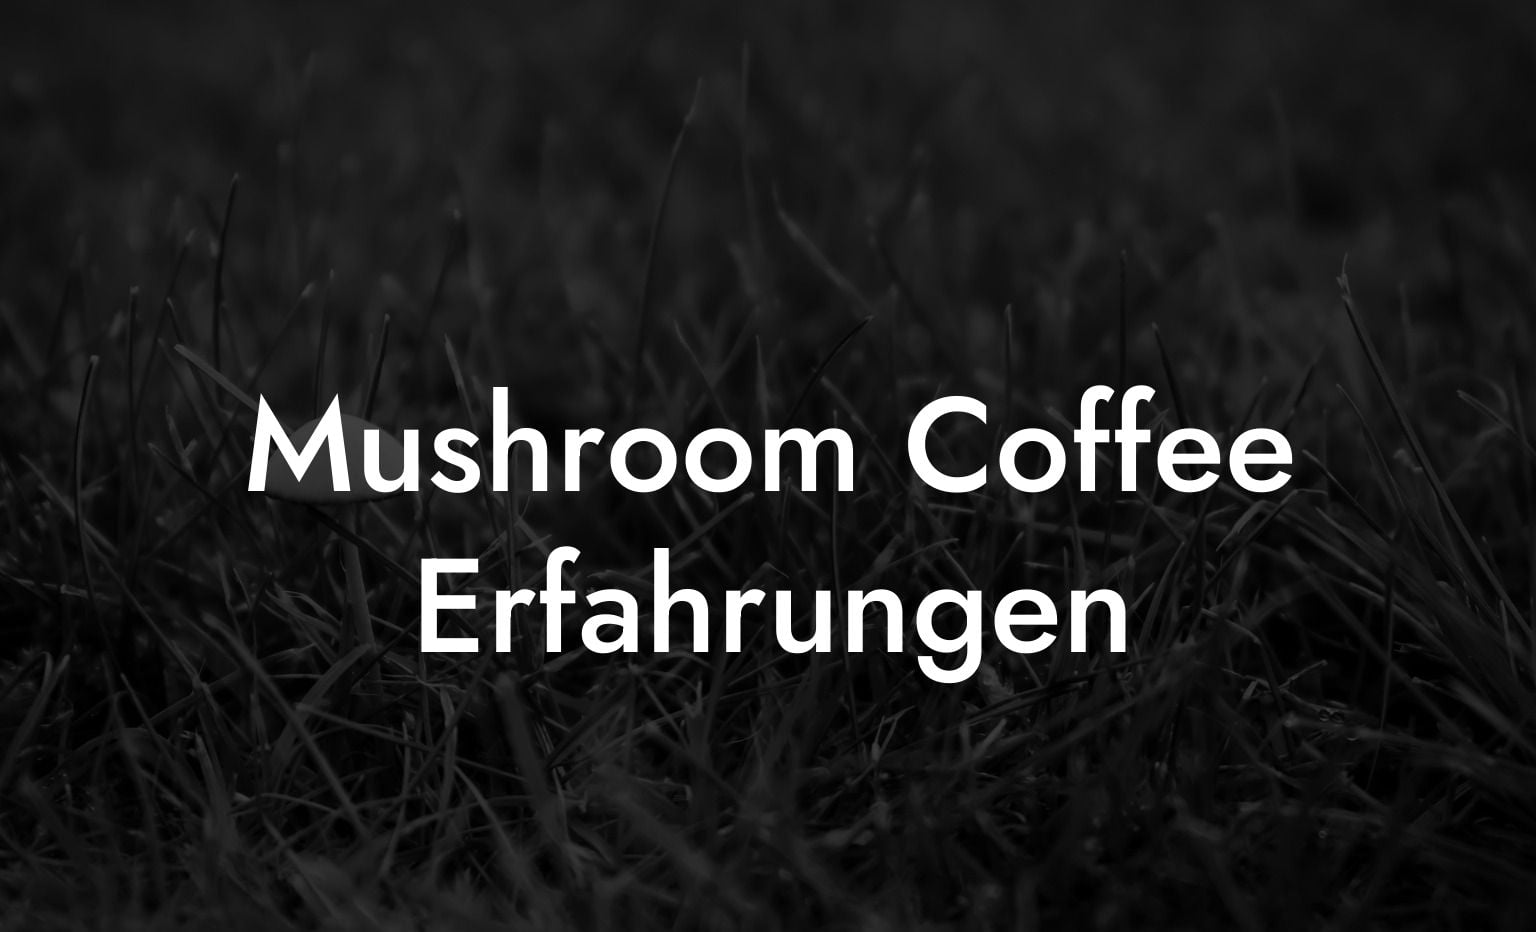 Mushroom Coffee Erfahrungen